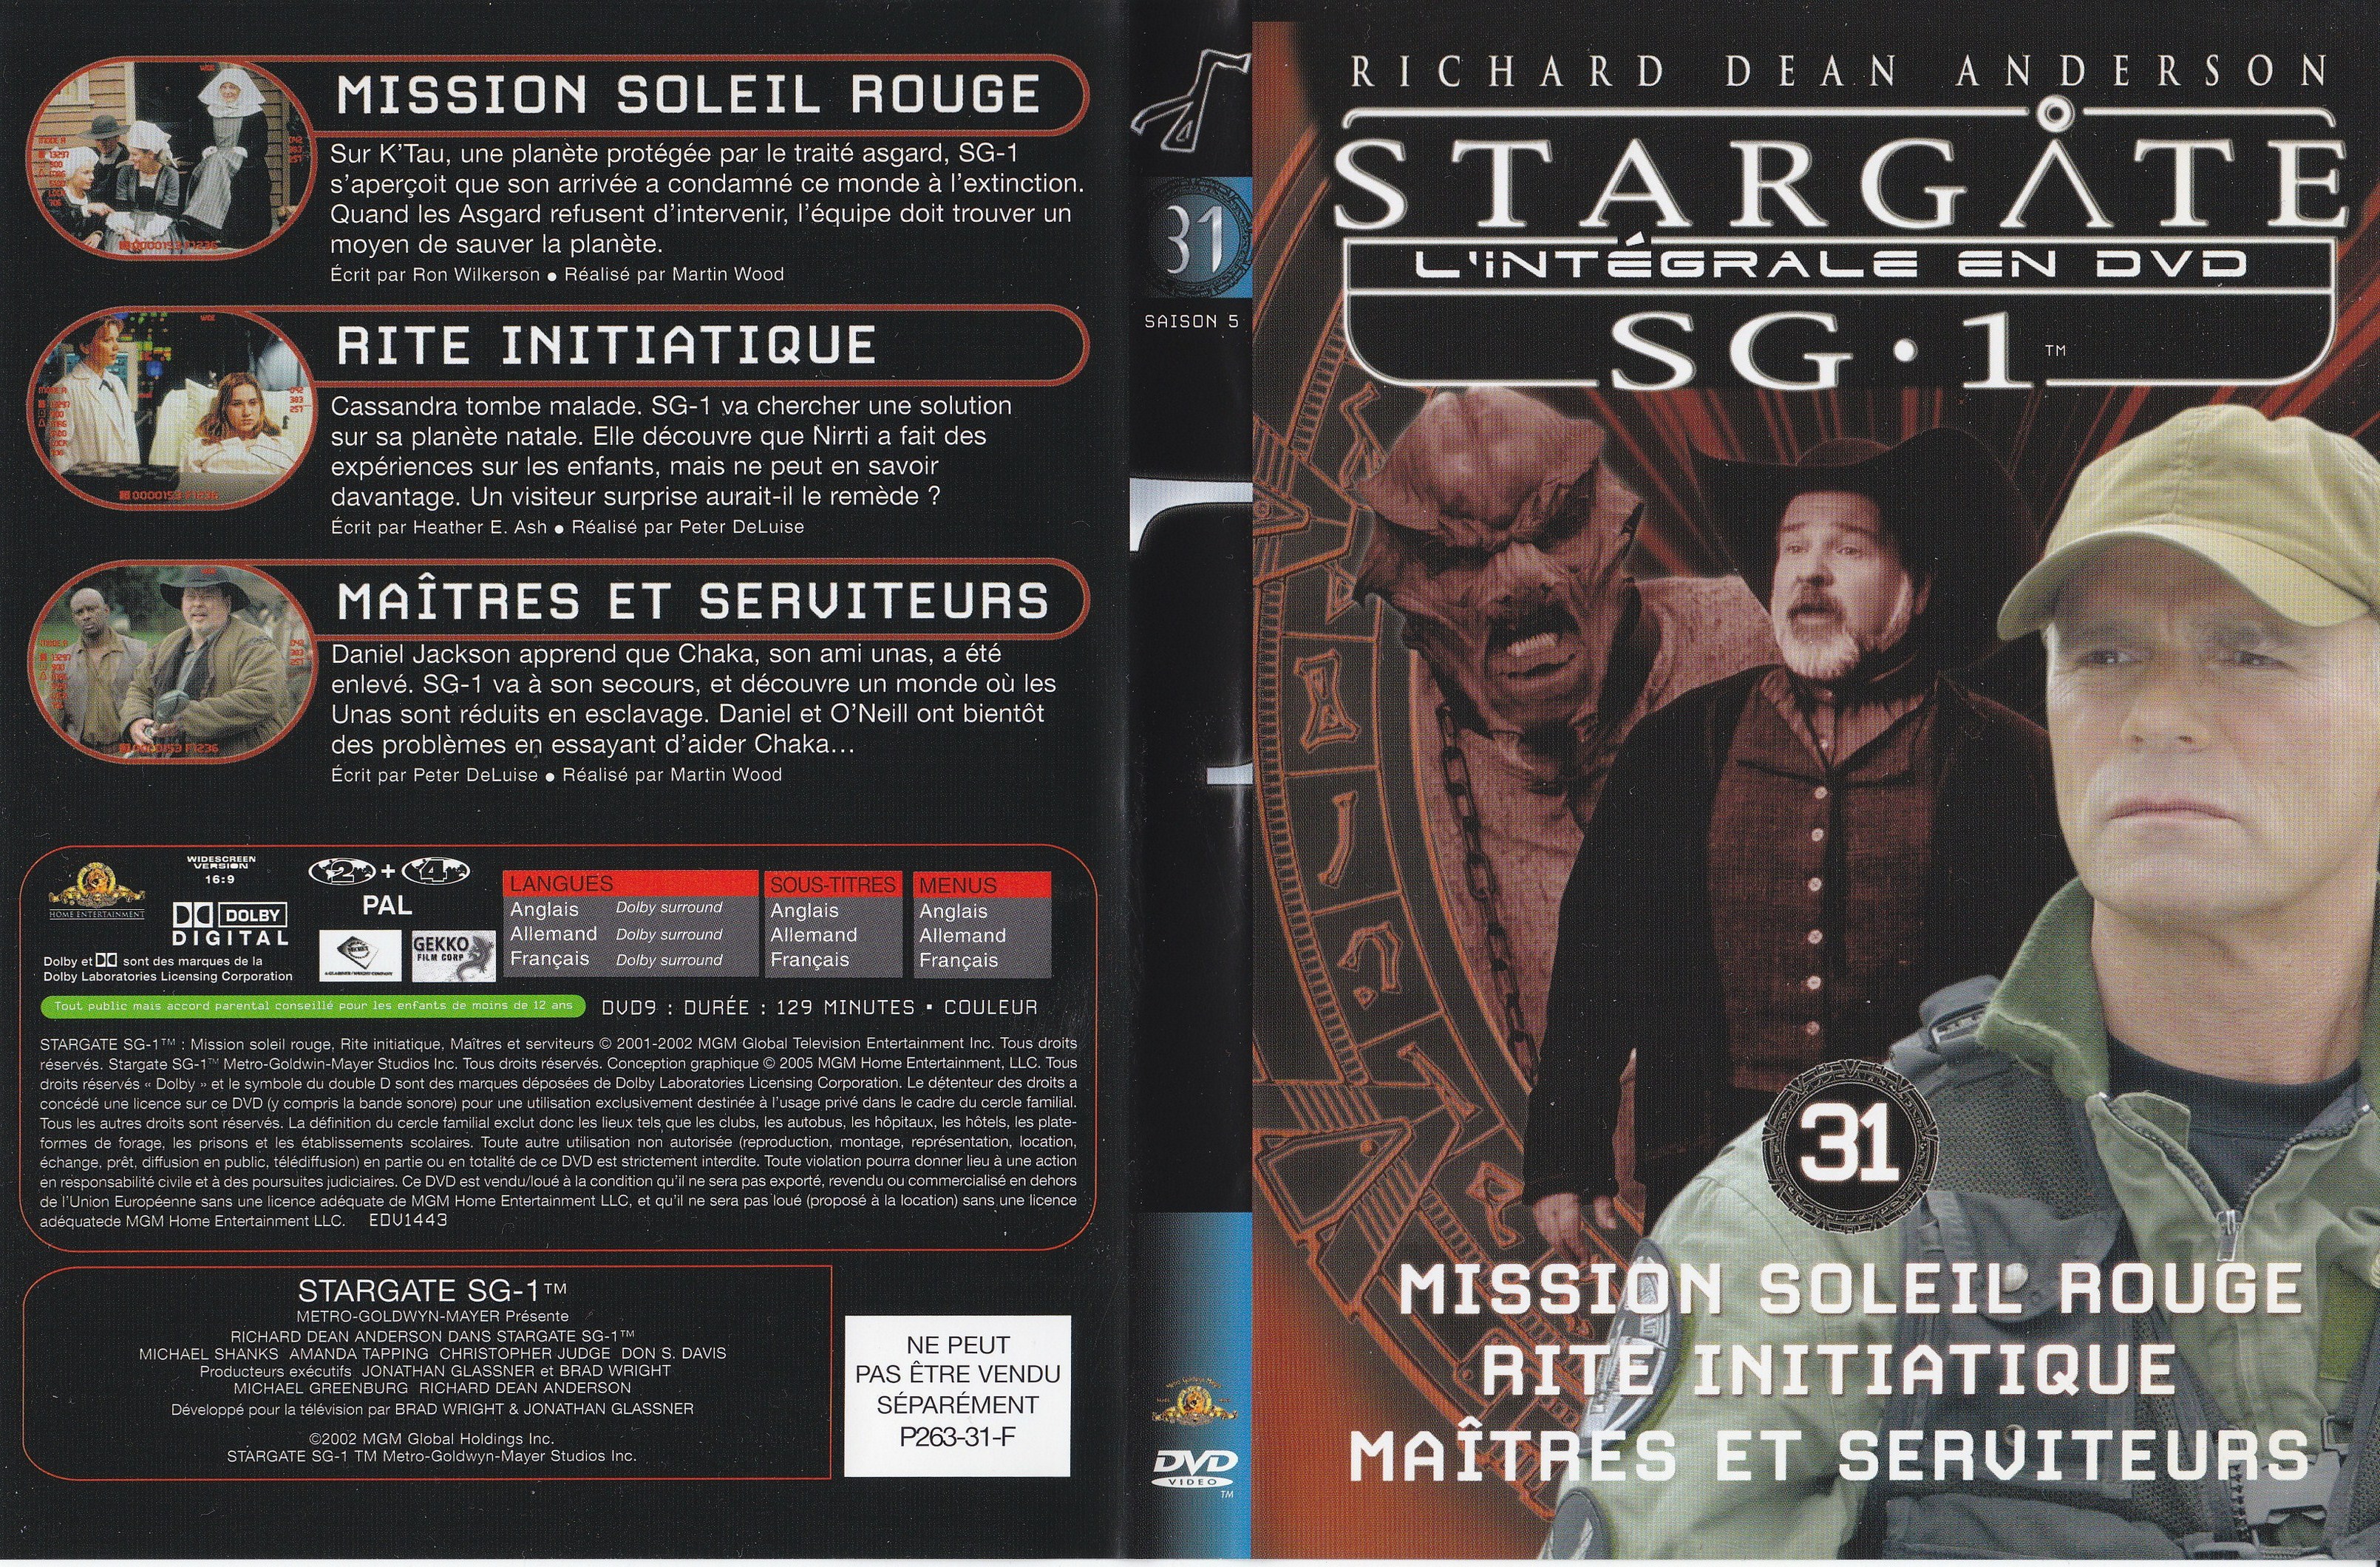 Stargate SG1 Intgrale Saison 5 vol 31